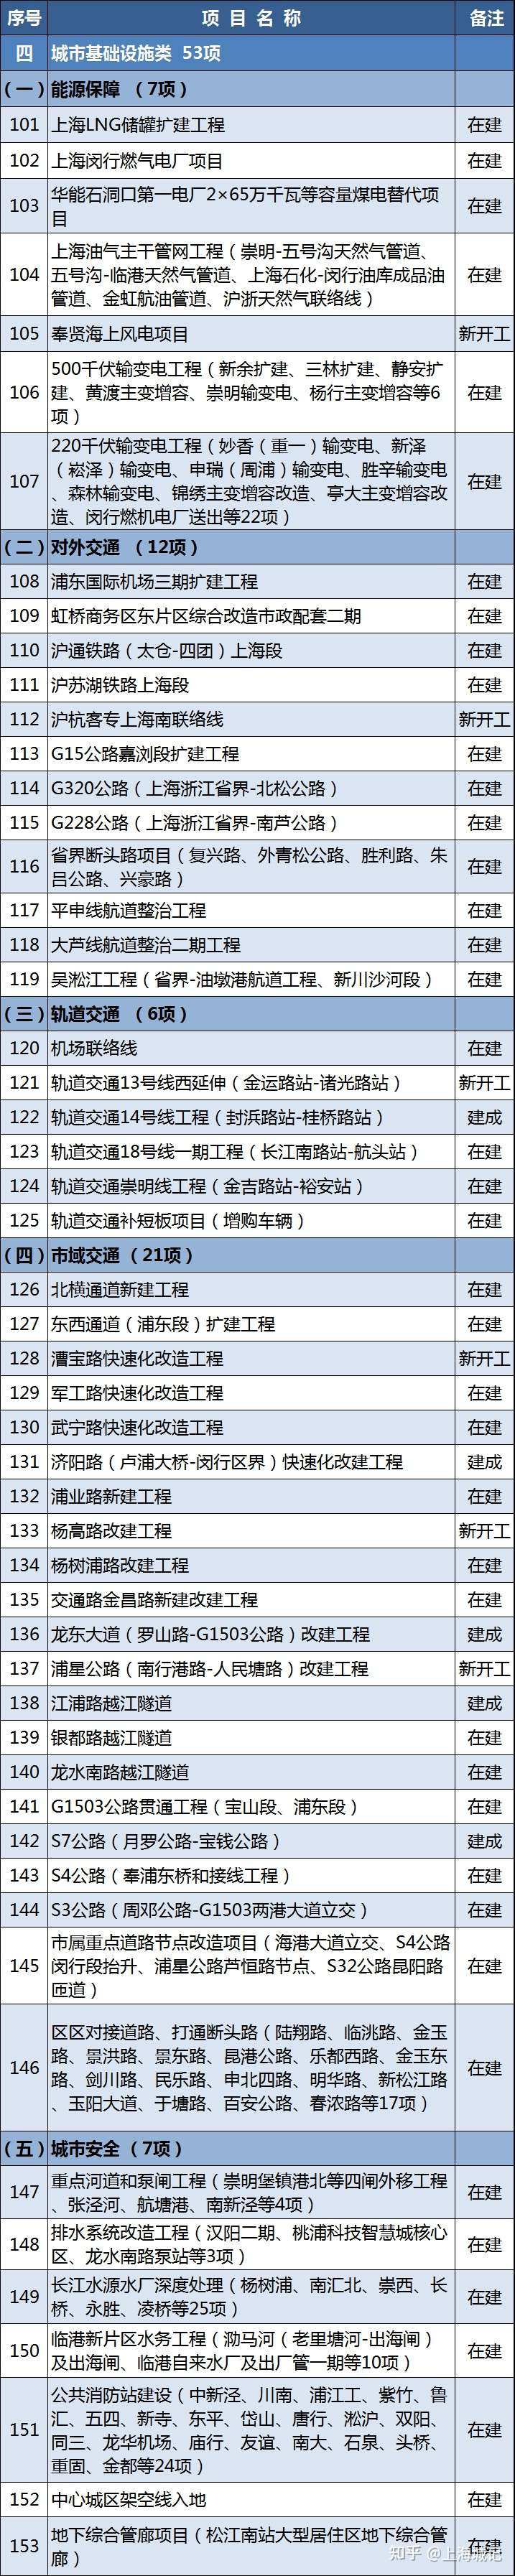 2021年上海重大建設項目清單公布(圖4)